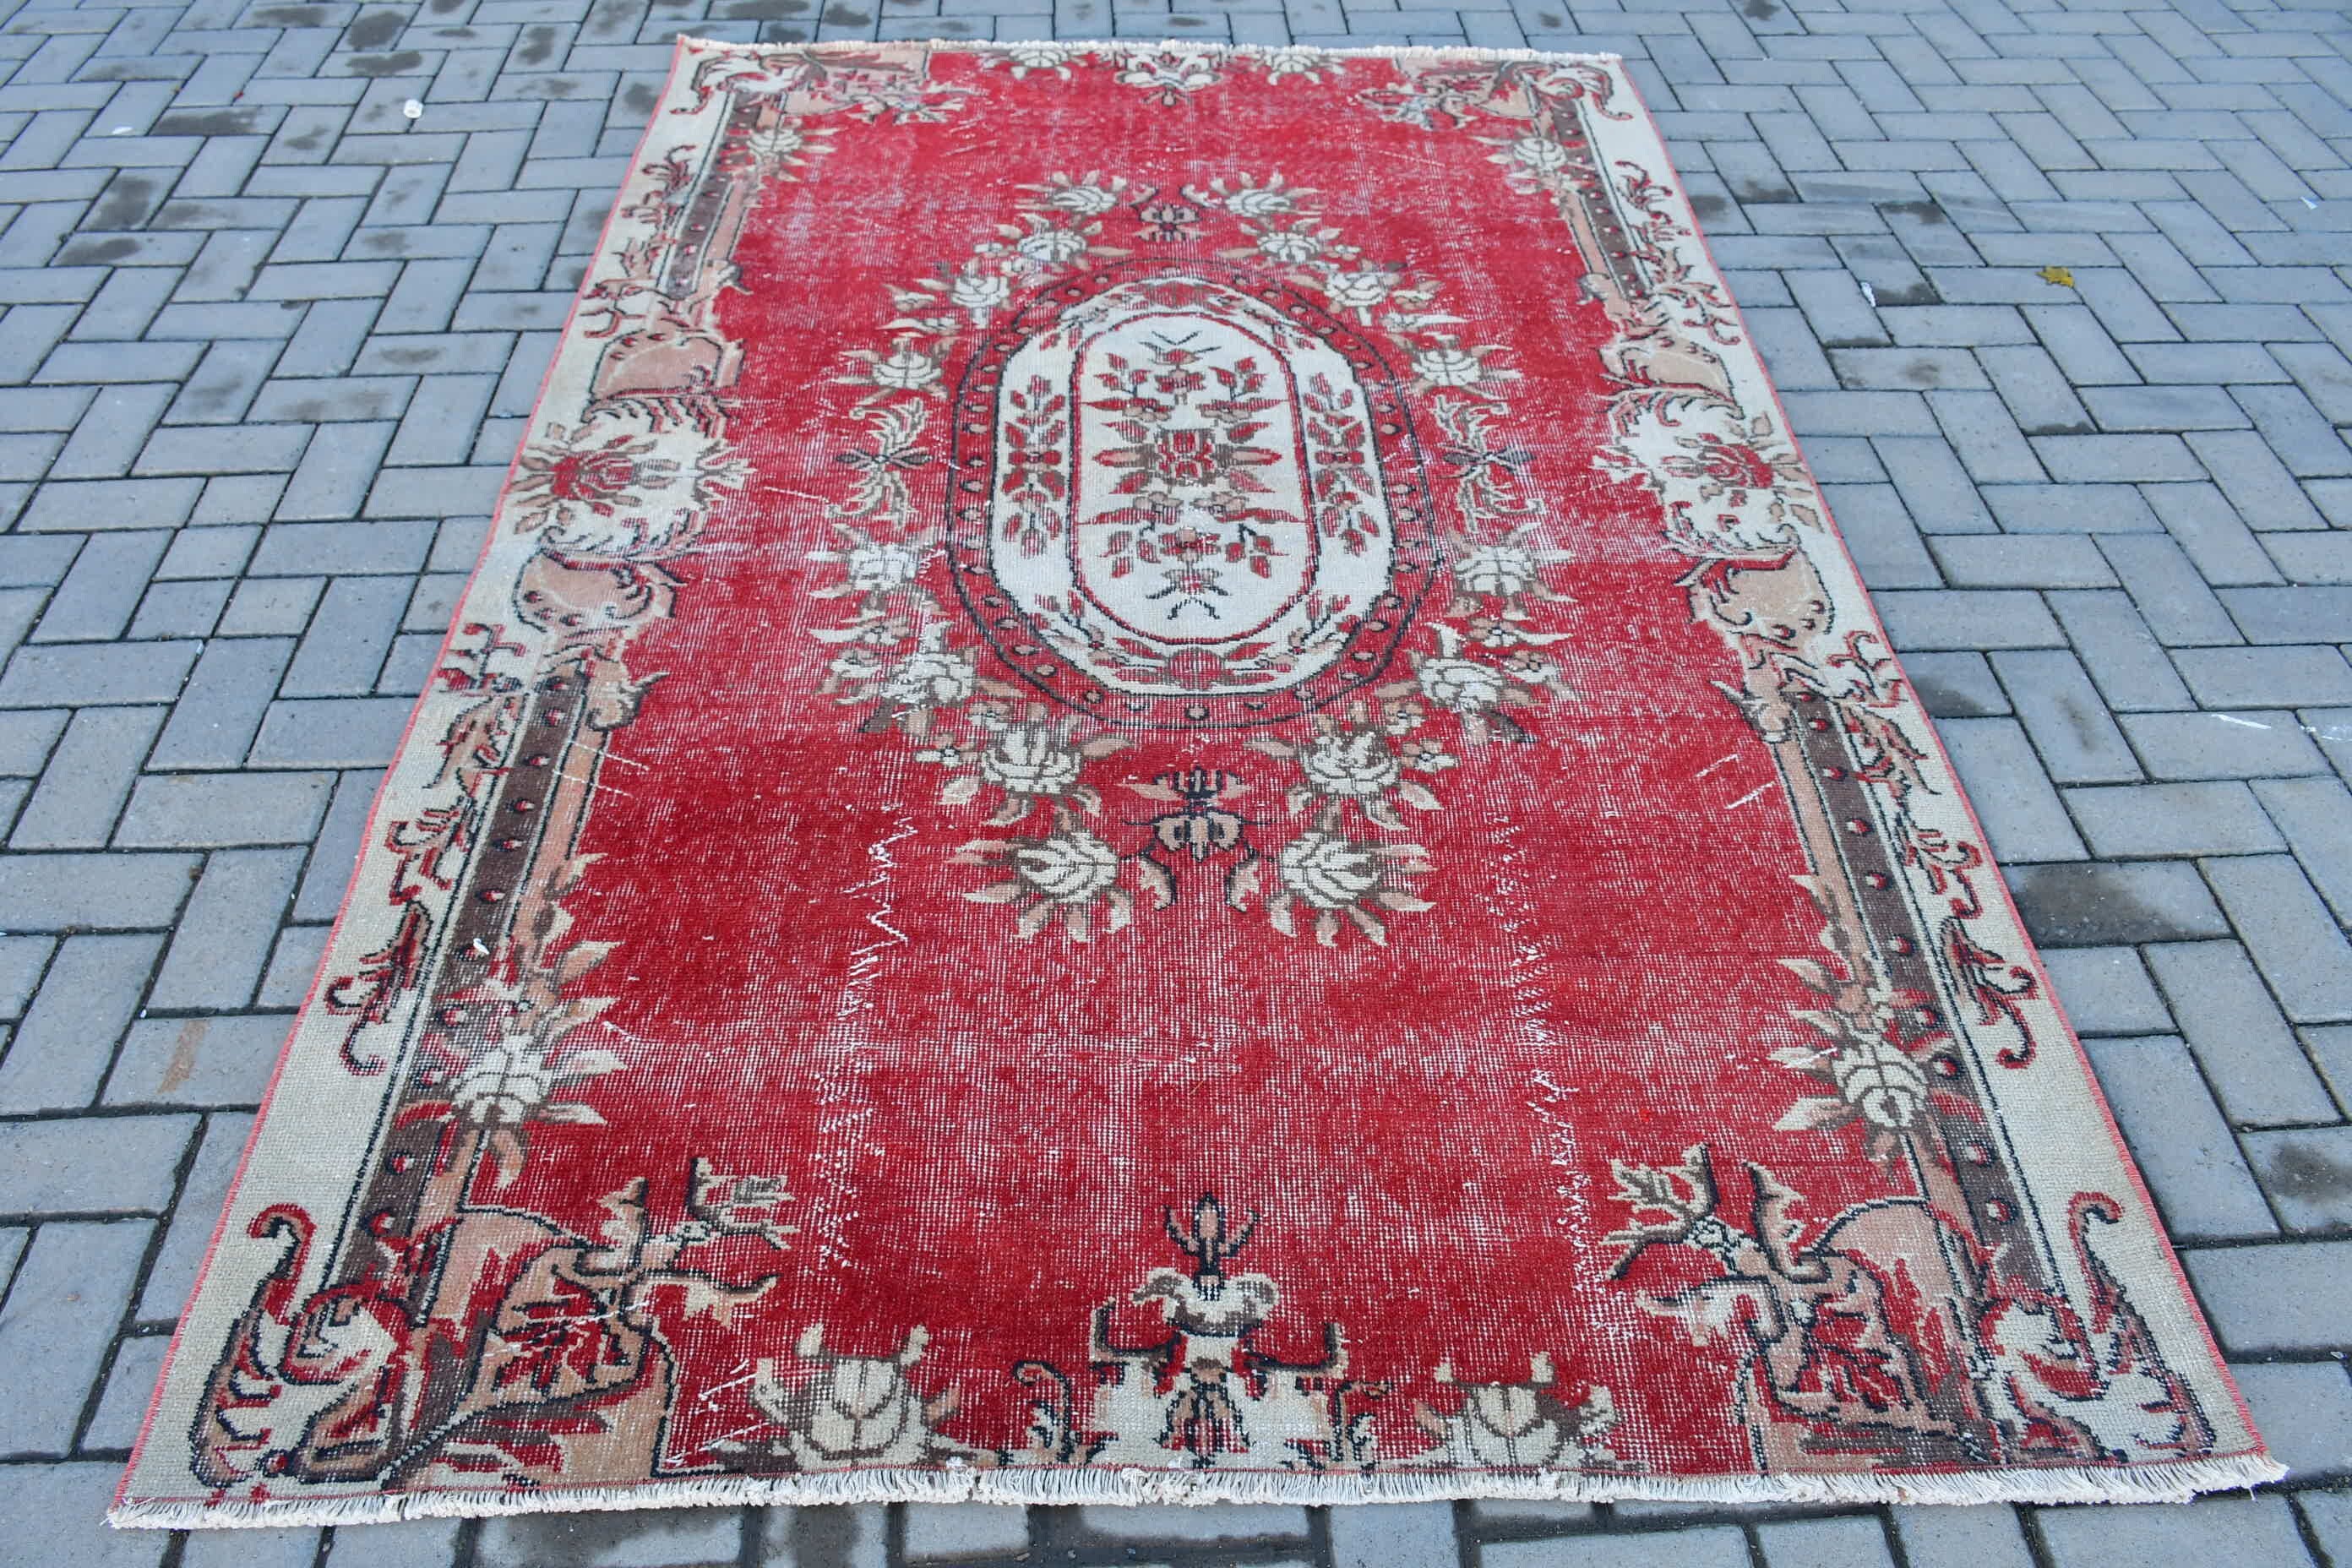 Red Oriental Rug, Bedroom Rug, Turkish Rug, Wool Rugs, Rugs for Bedroom, 5.2x7.9 ft Large Rug, Vintage Rugs, Salon Rug, Moroccan Rugs